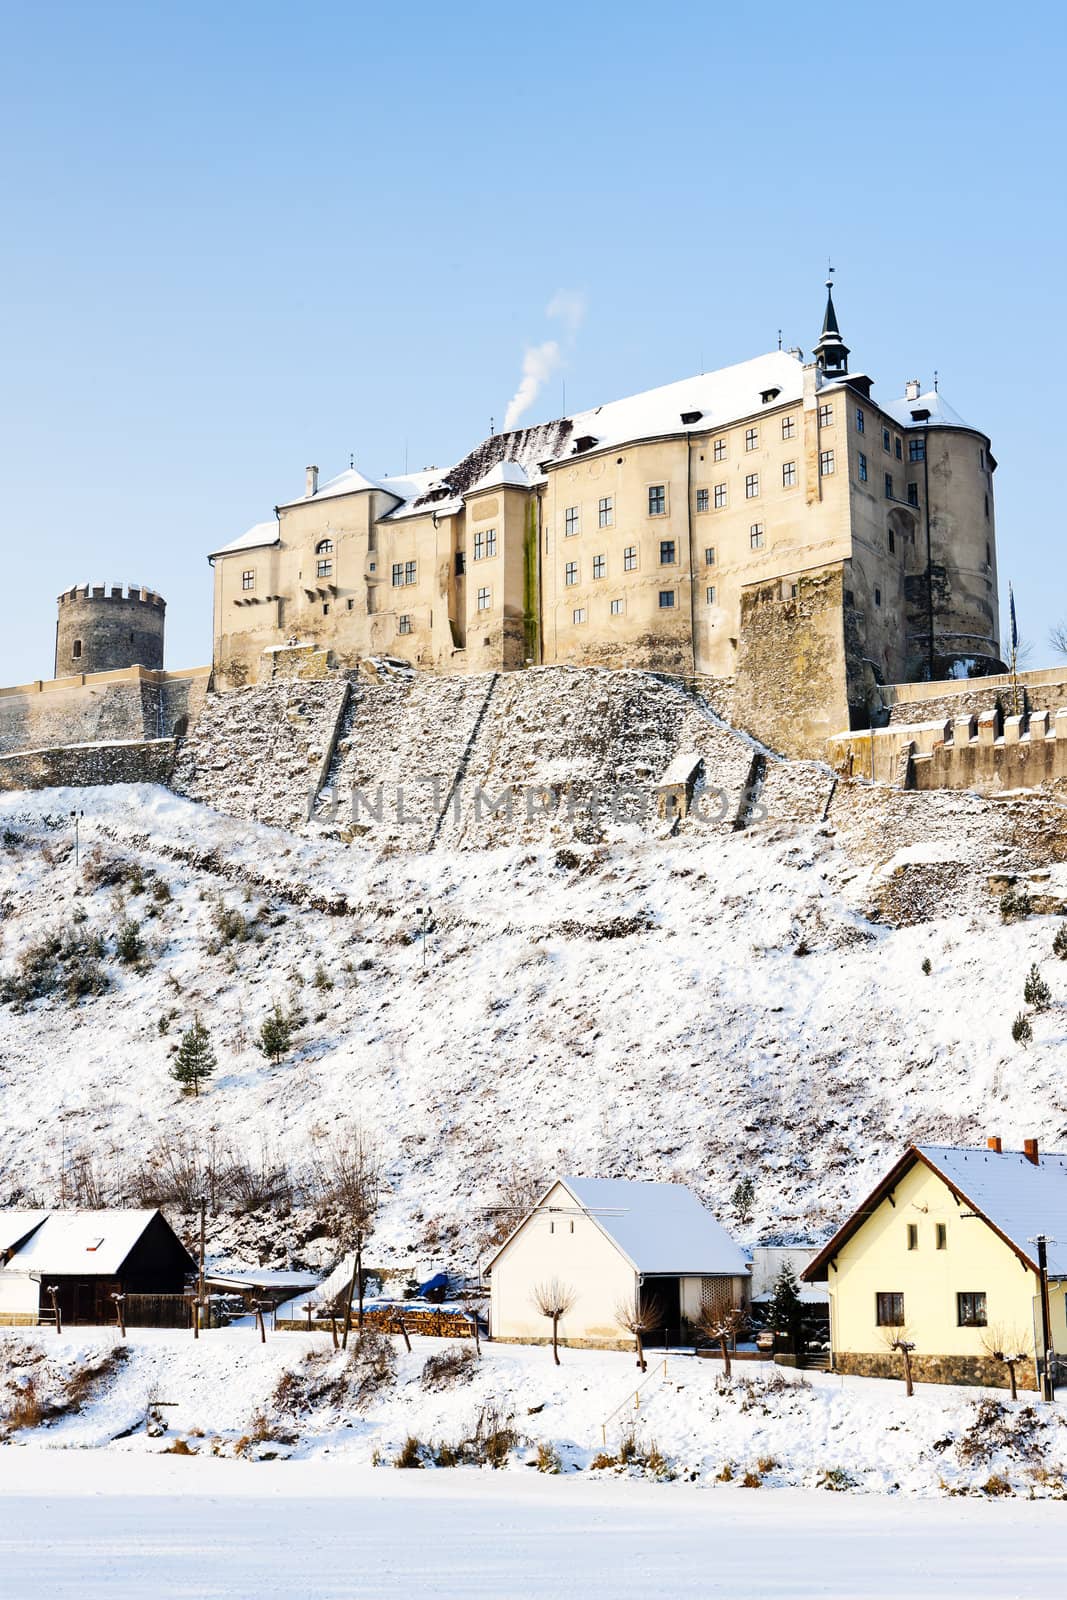 Cesky Sternberk Castle in winter, Czech Republic